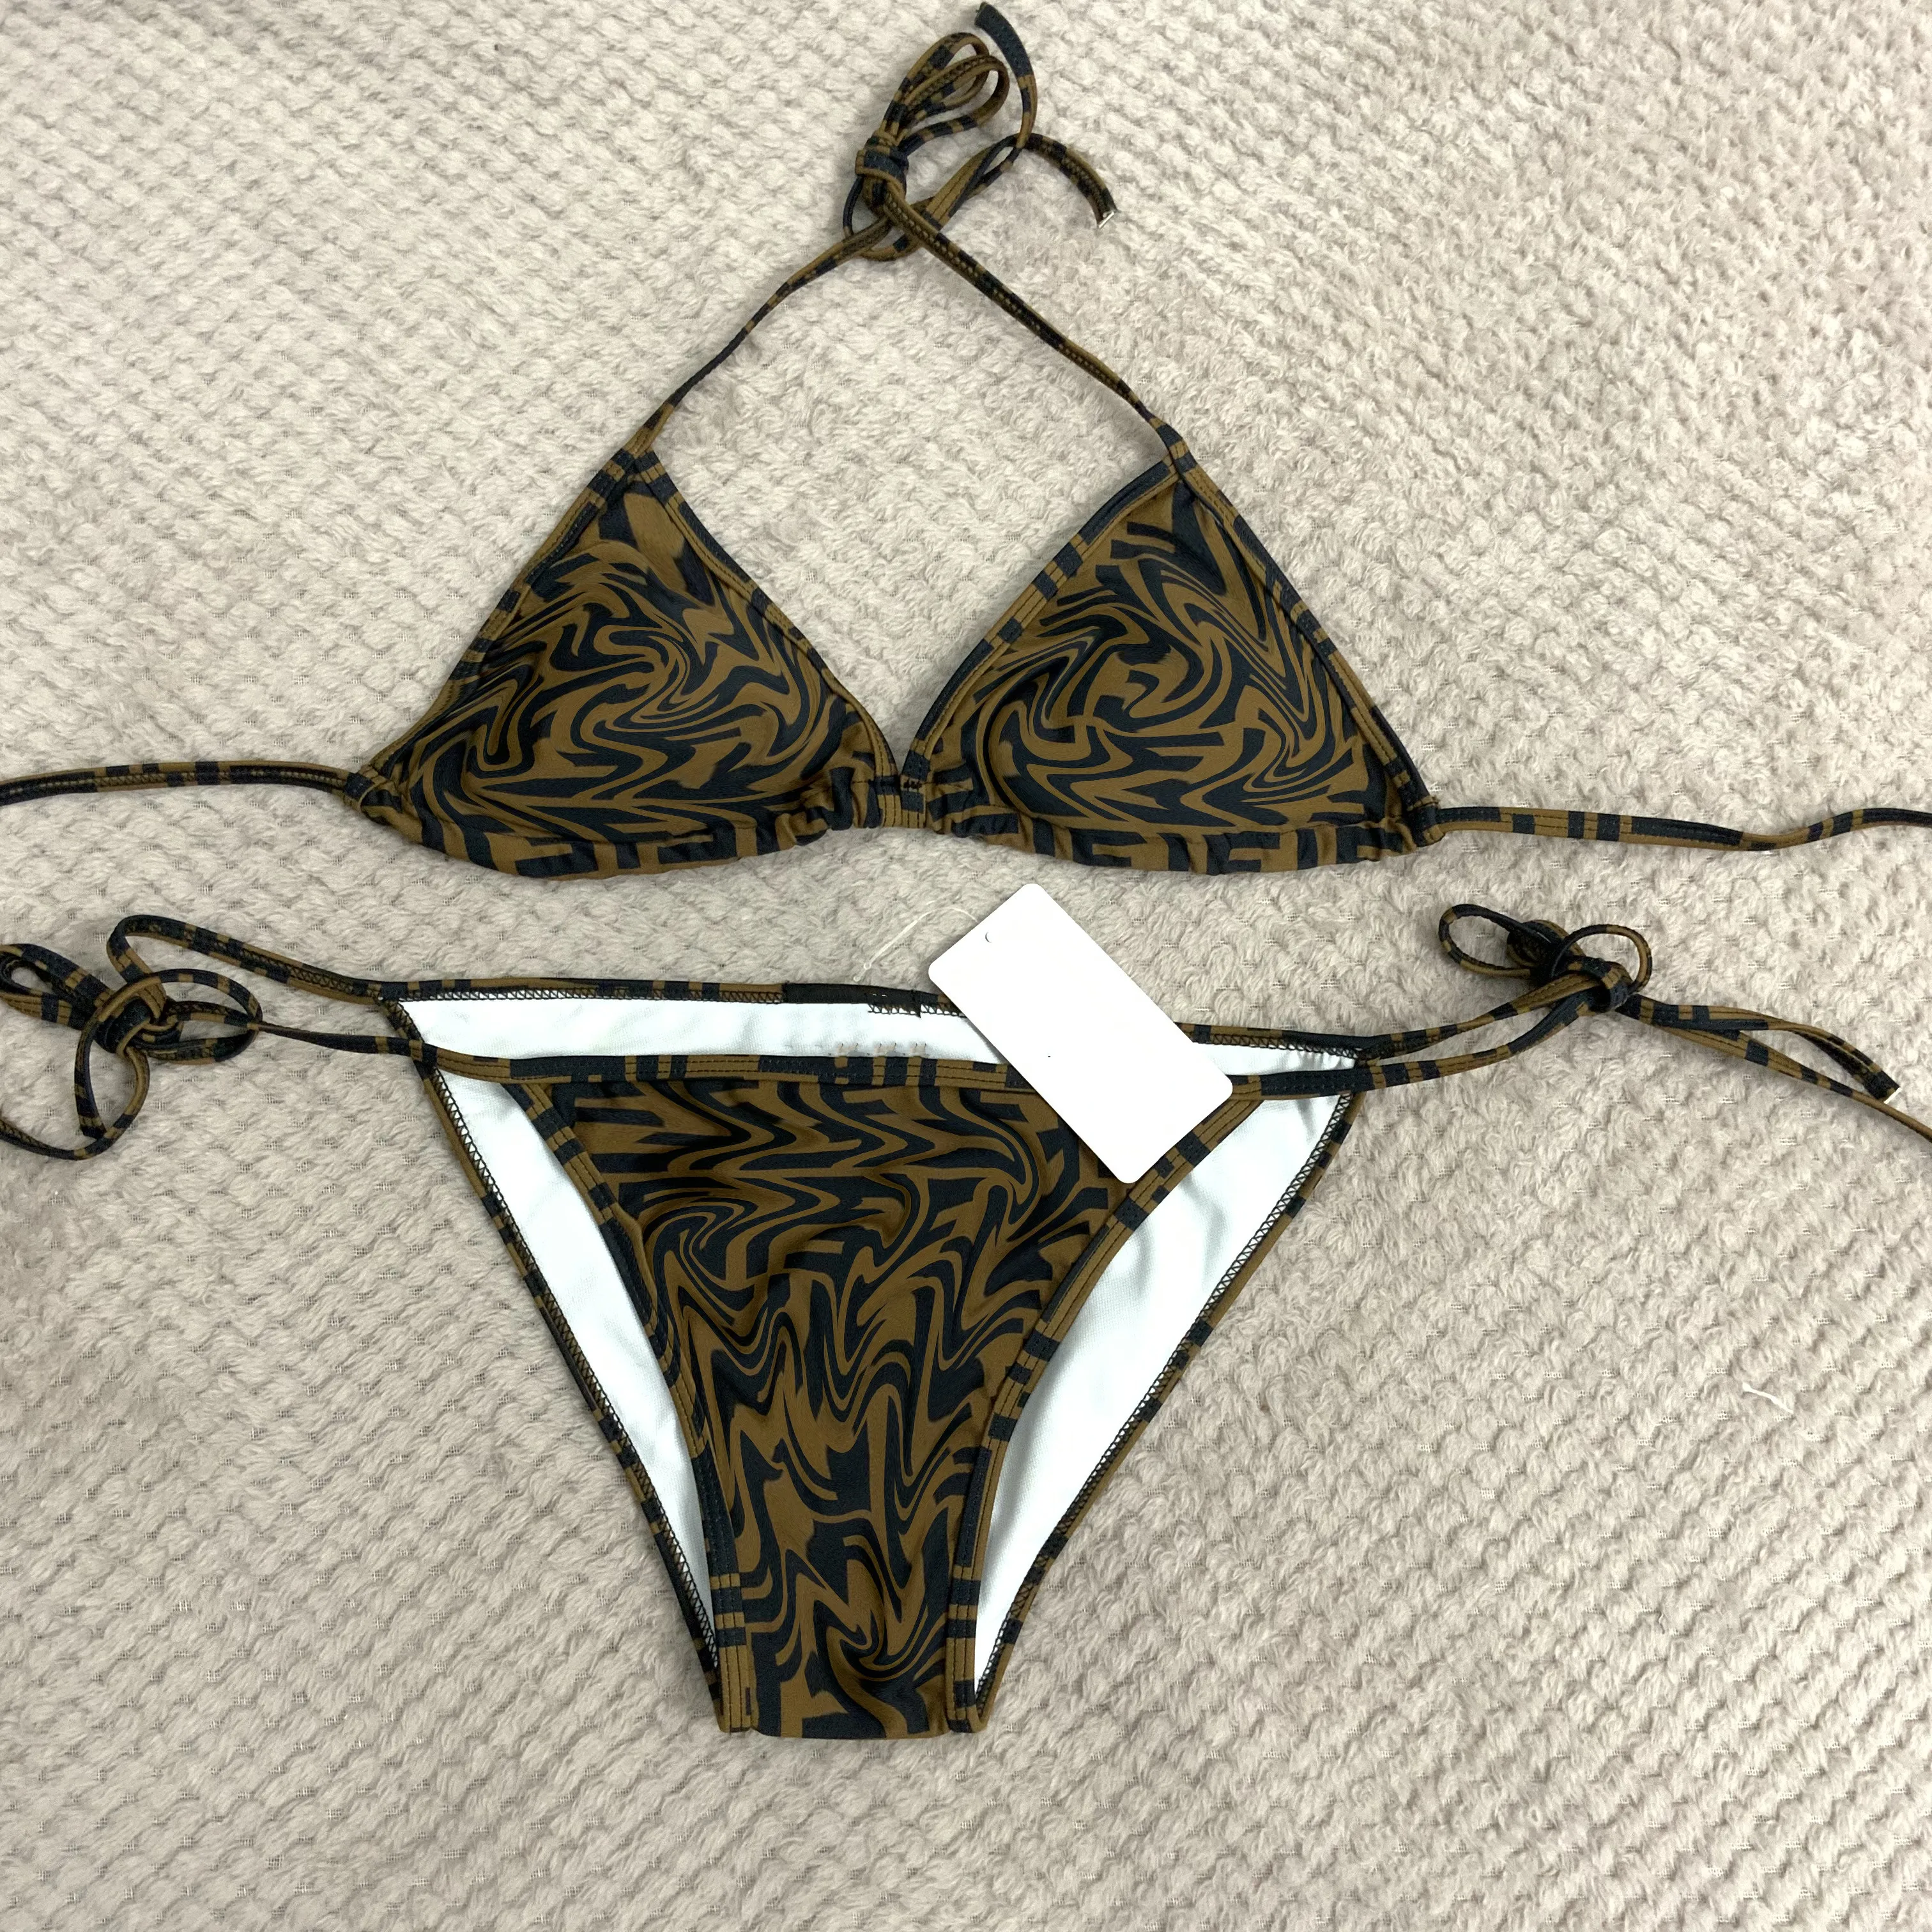 원피스 수영복 여자 섹시 비키니 두 가지 색상 레드와 블랙 수영복 여름 해변 수영복 크기 S-XL